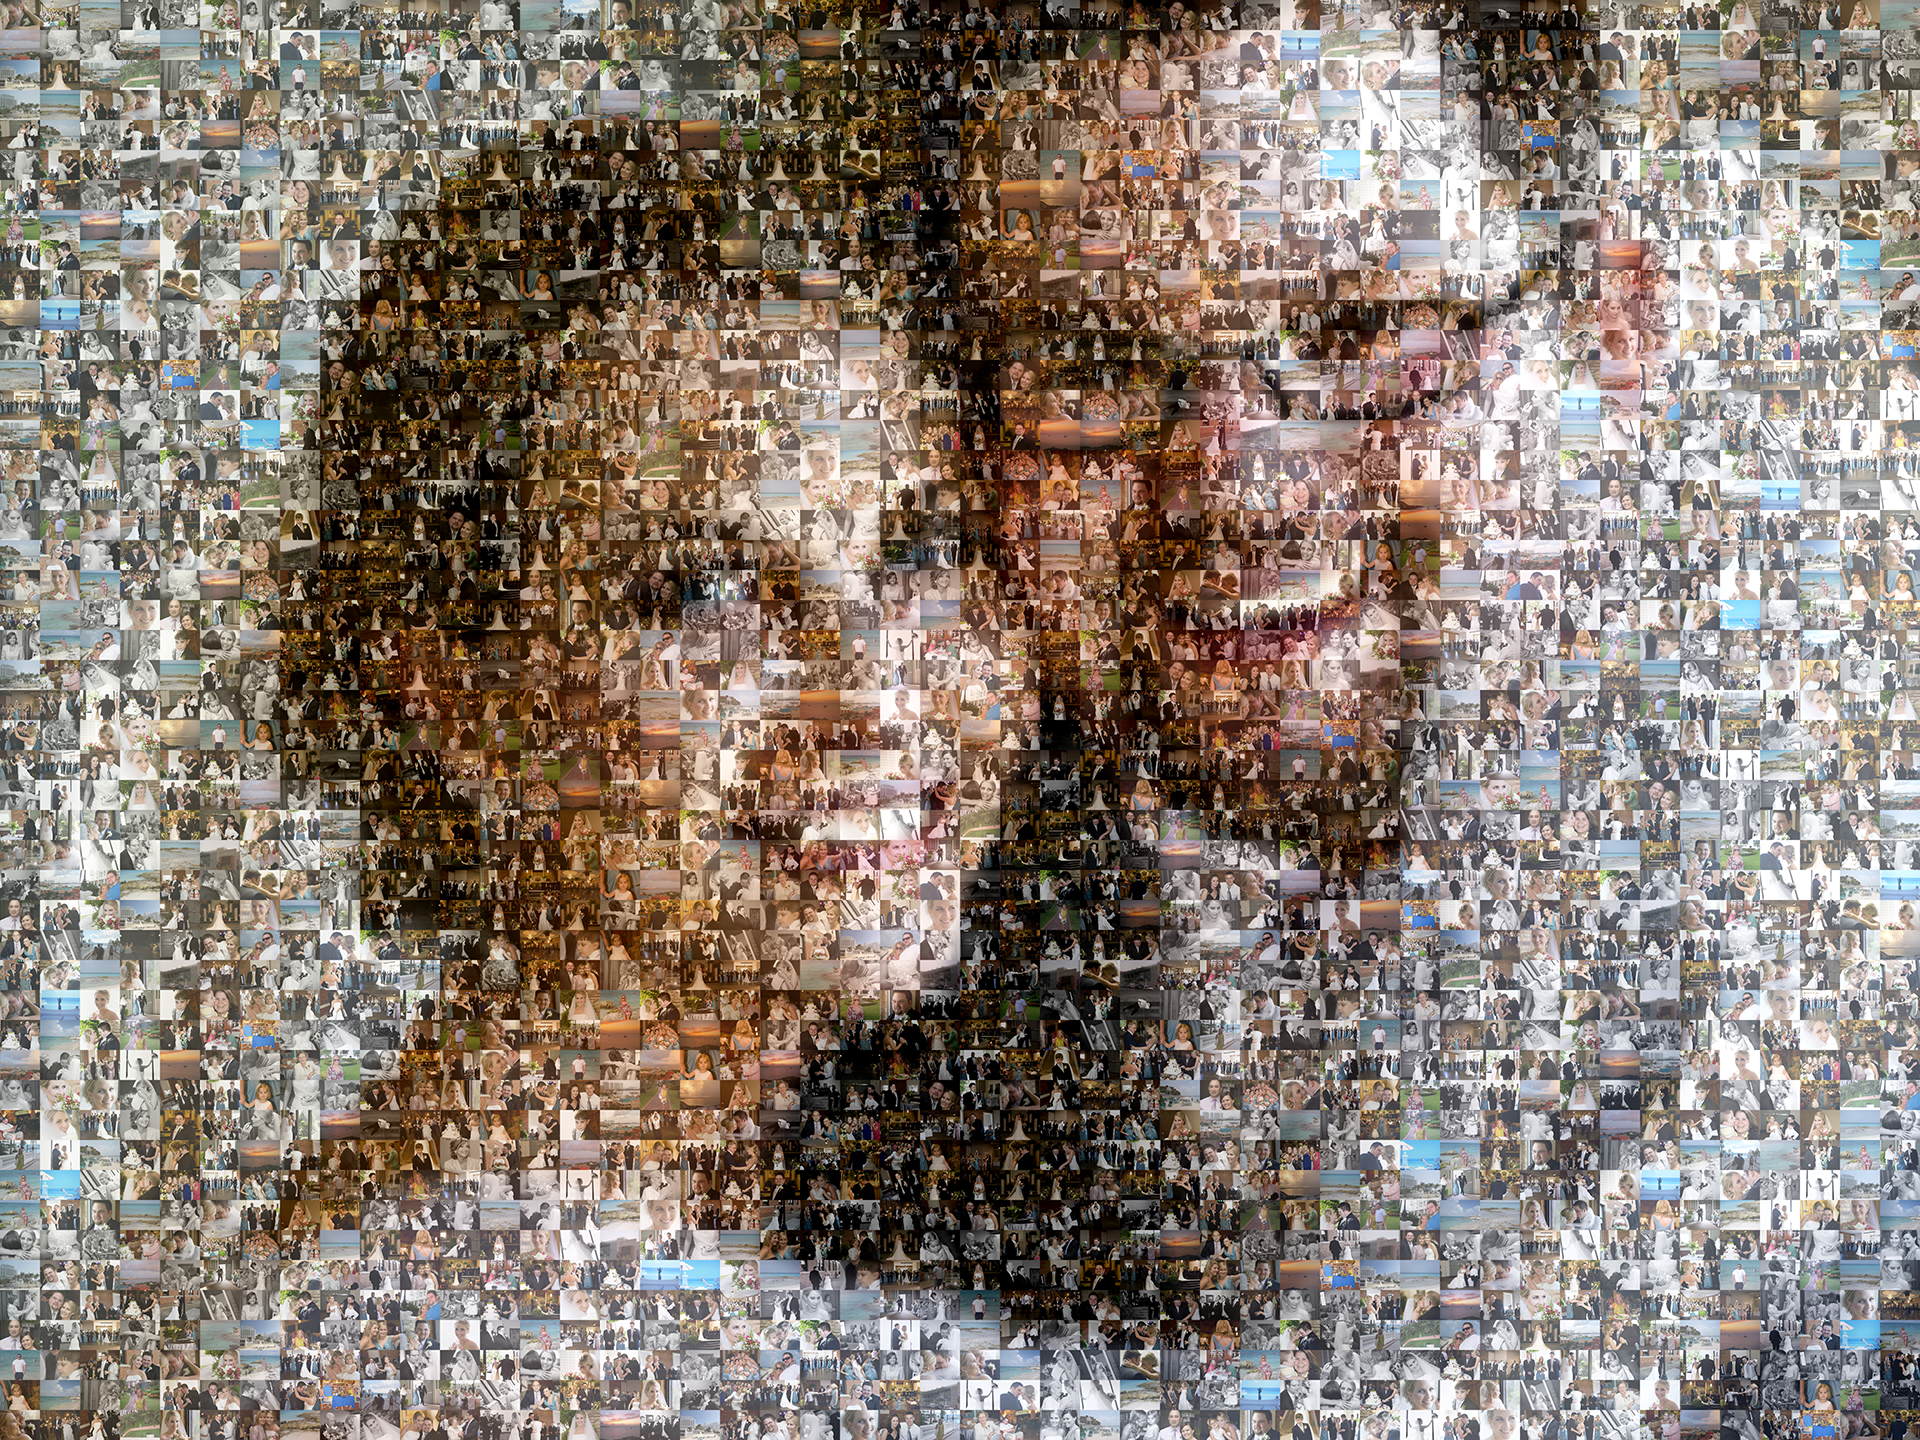 photo mosaic created using 229 wedding photos